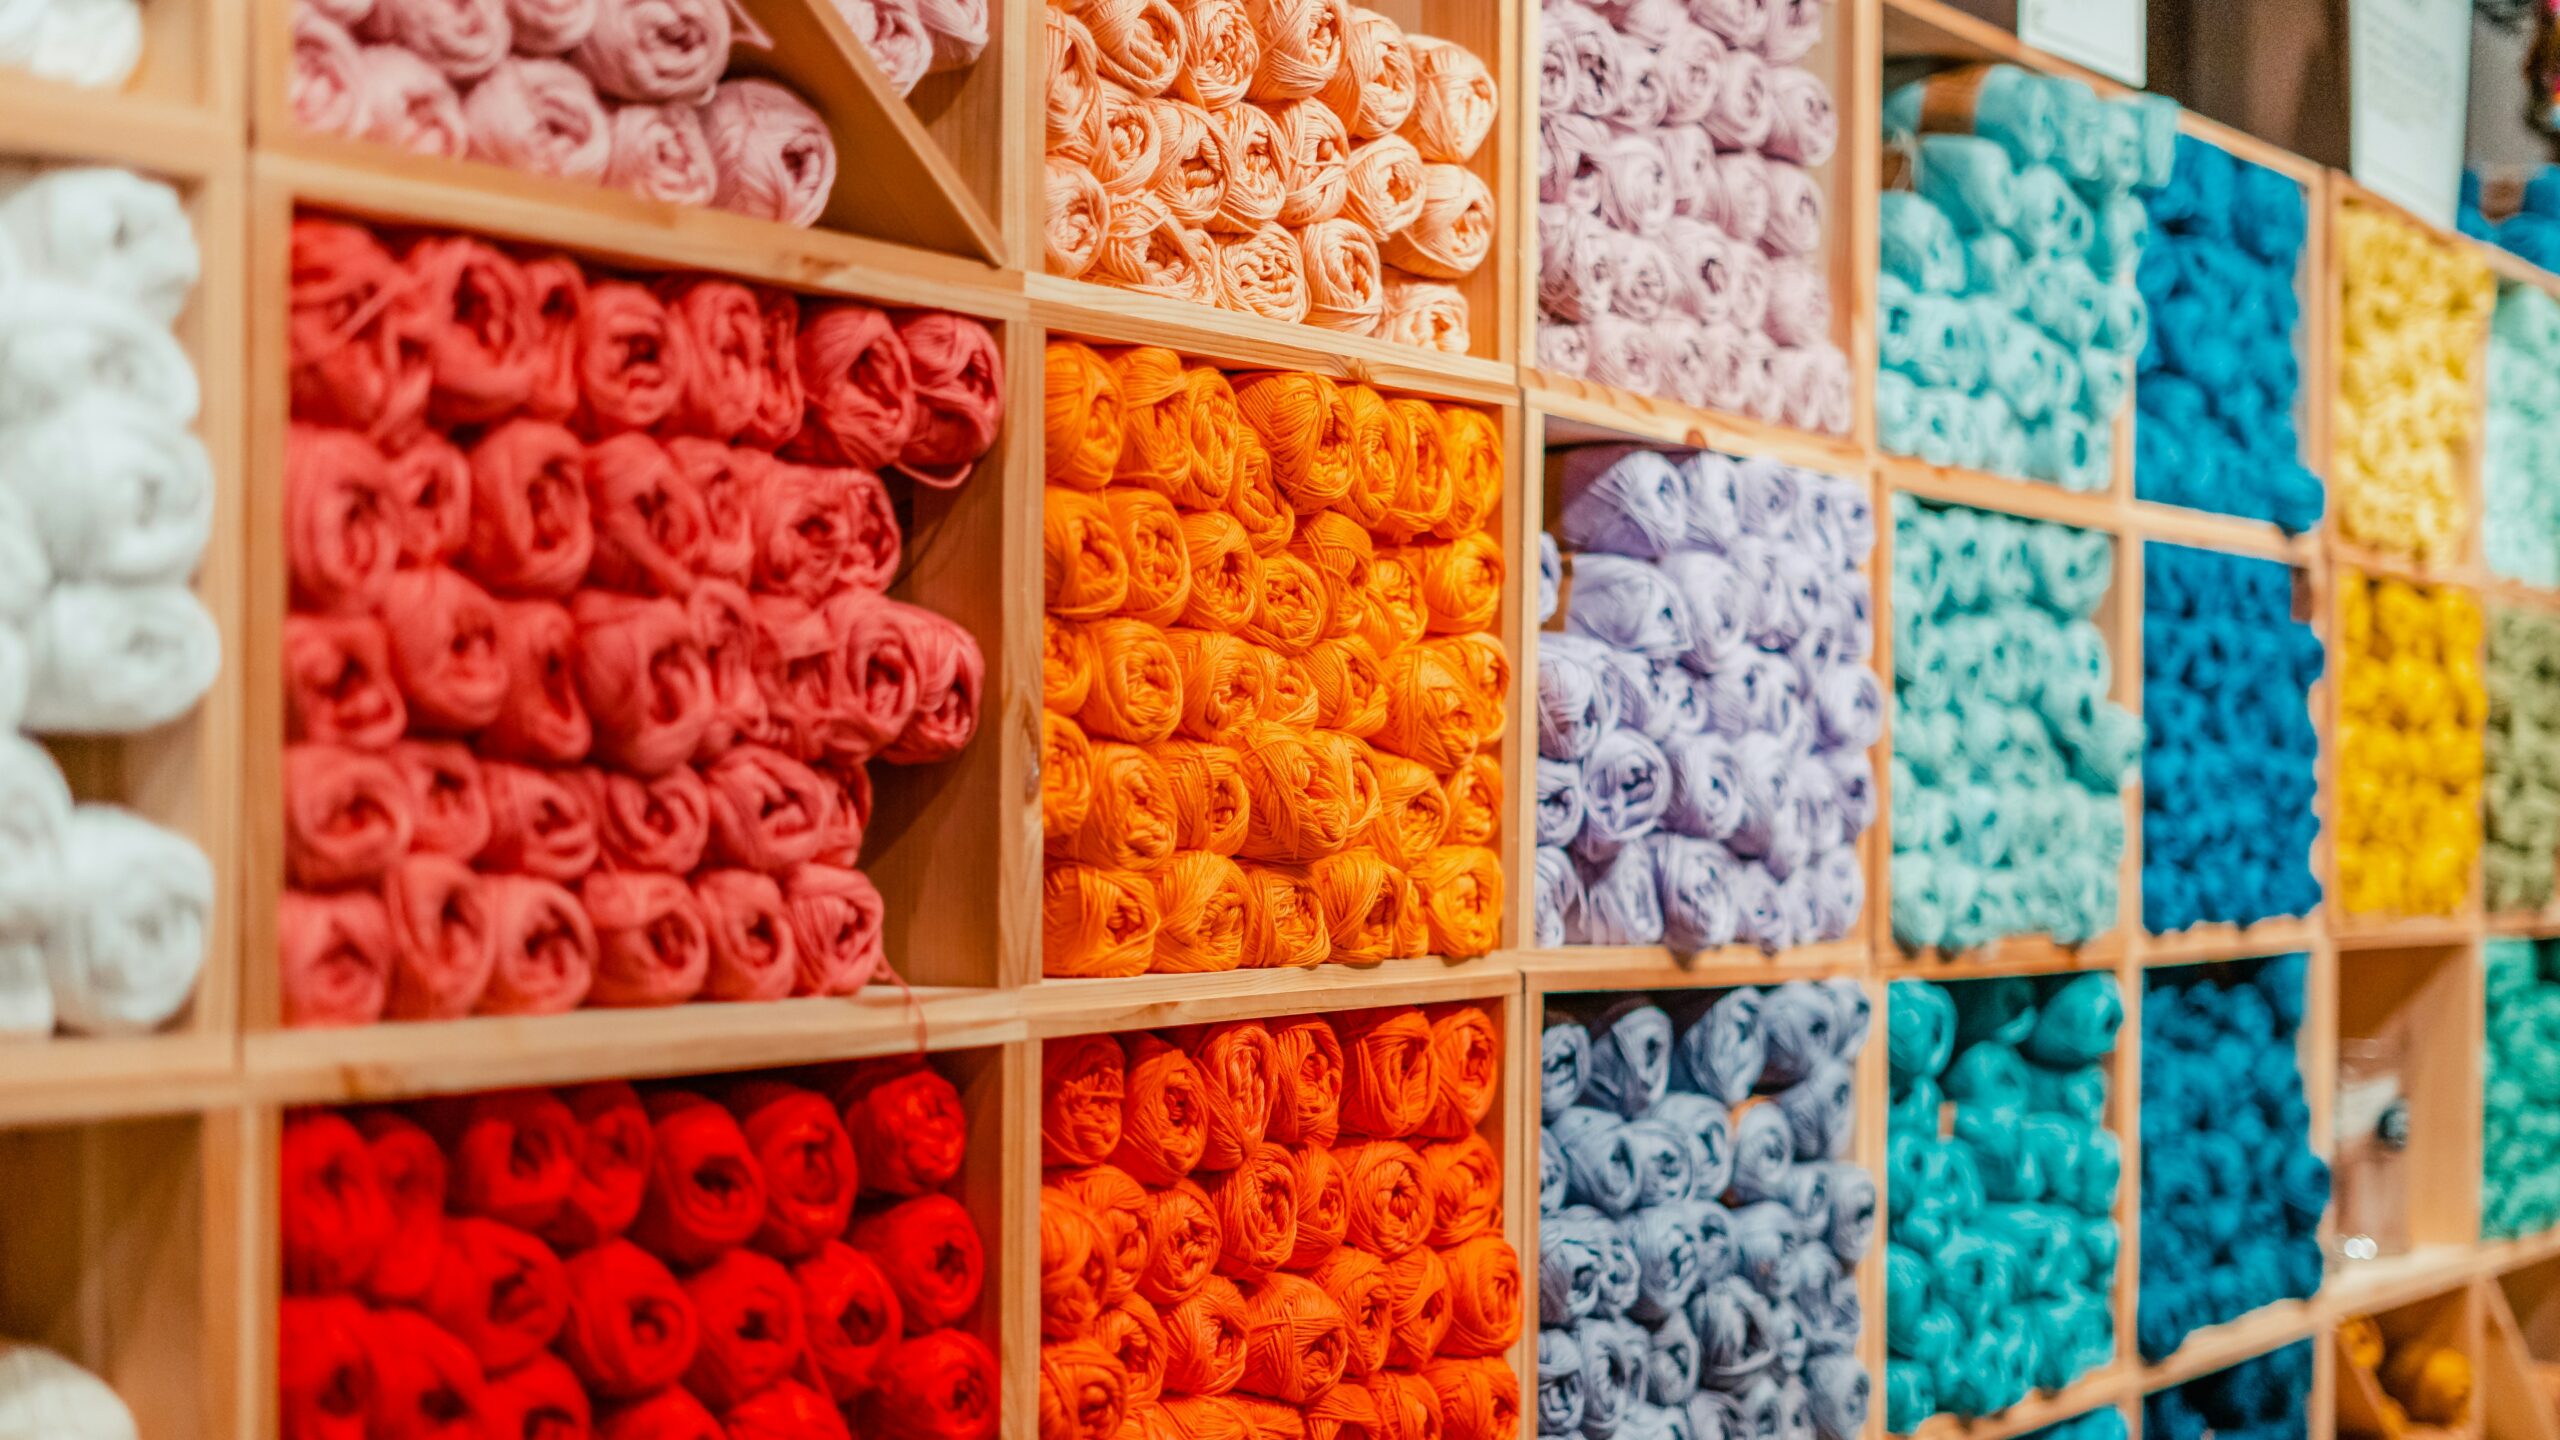 Crochet Business Name Ideas to Kickstart Success